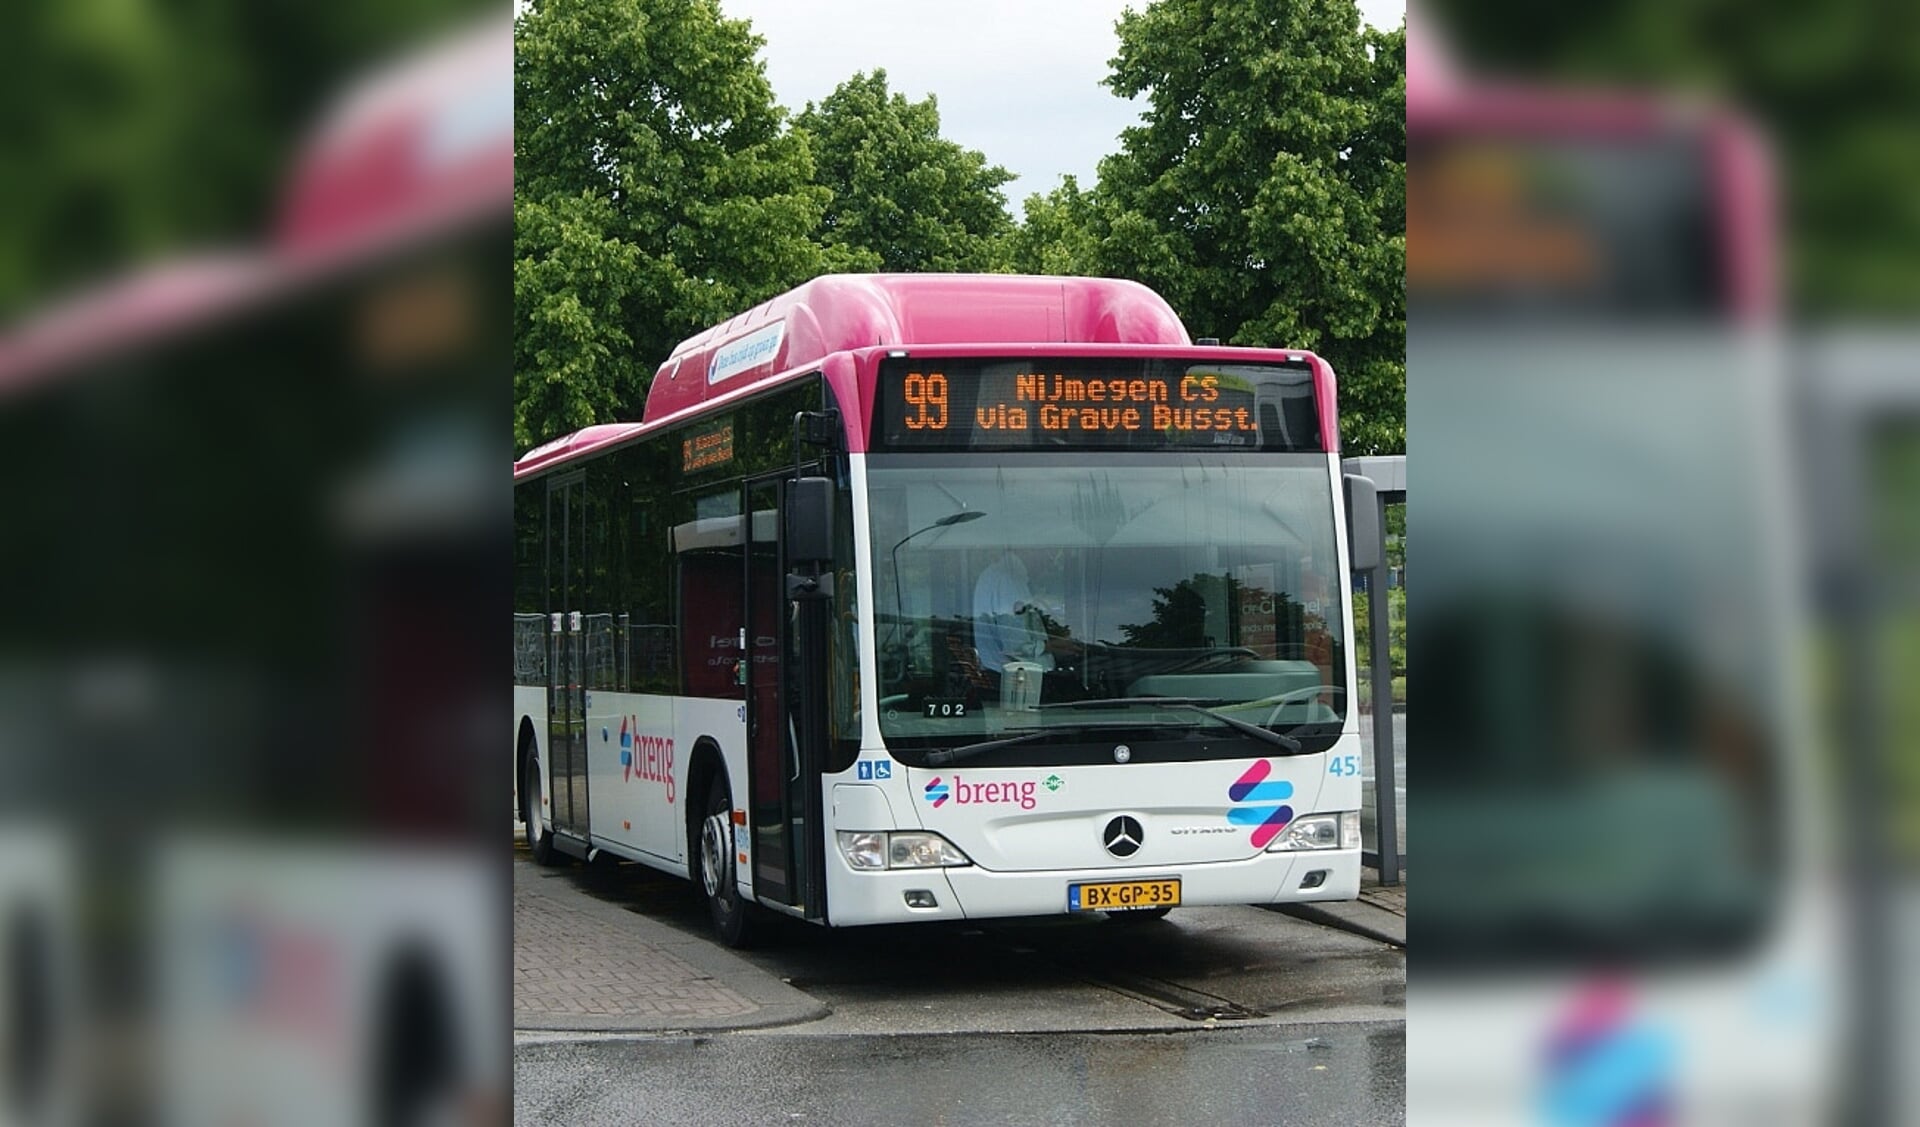 Goot Farmacologie fusie Bussen lijn 99 vanaf zondag 30 augustus weer over de brug bij Grave -  Adverteren Schaijk | Arenalokaal | Krant en Online